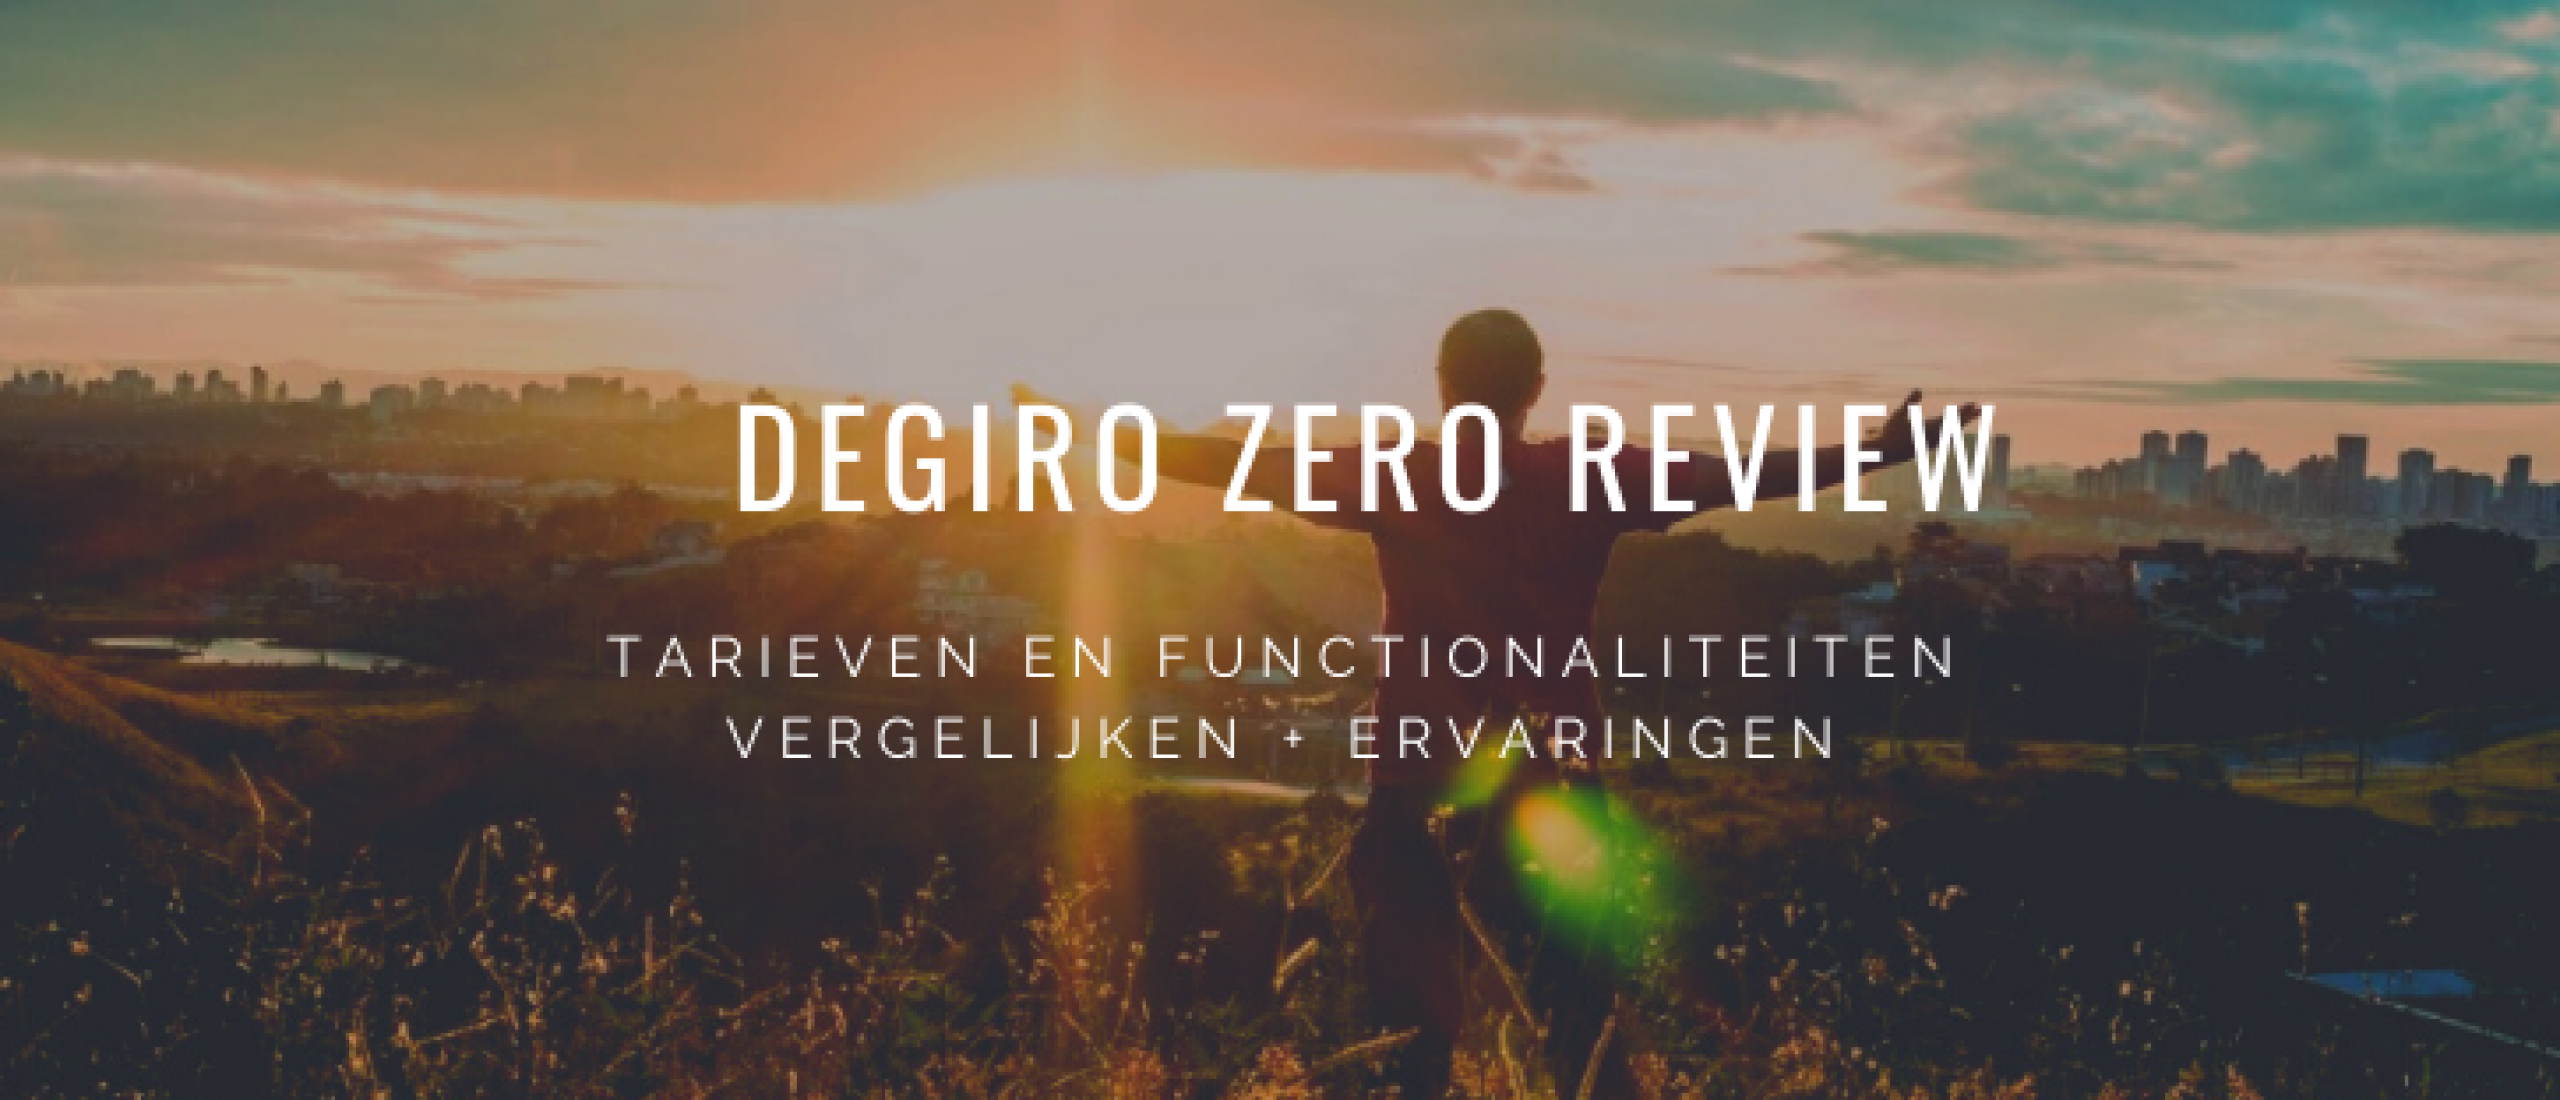 DEGIRO Zero Review: Tarieven en €100.000+ Portfolio Ervaringen | Happy Investors